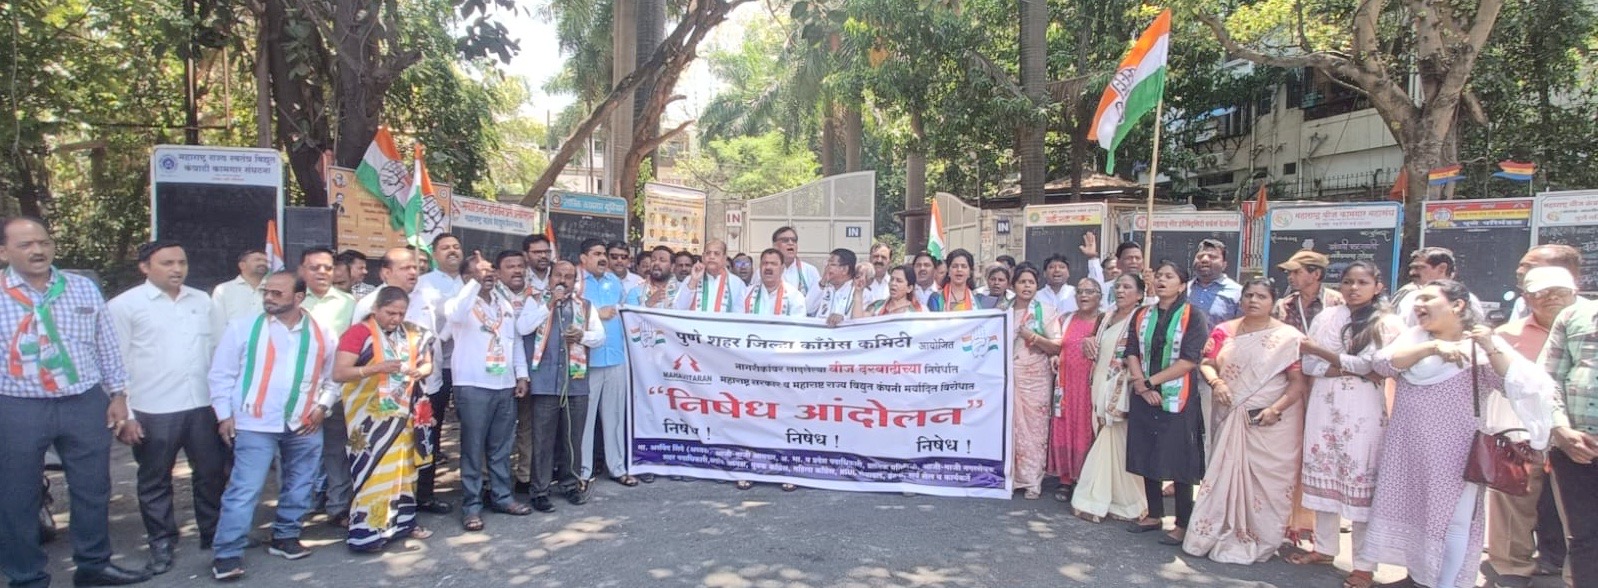 Congress | Pune | 6% वीज दरवाढीच्या विरोधात काँग्रेसकडून वीज मंडळाच्या कार्यालया बाहेर आंदोलन